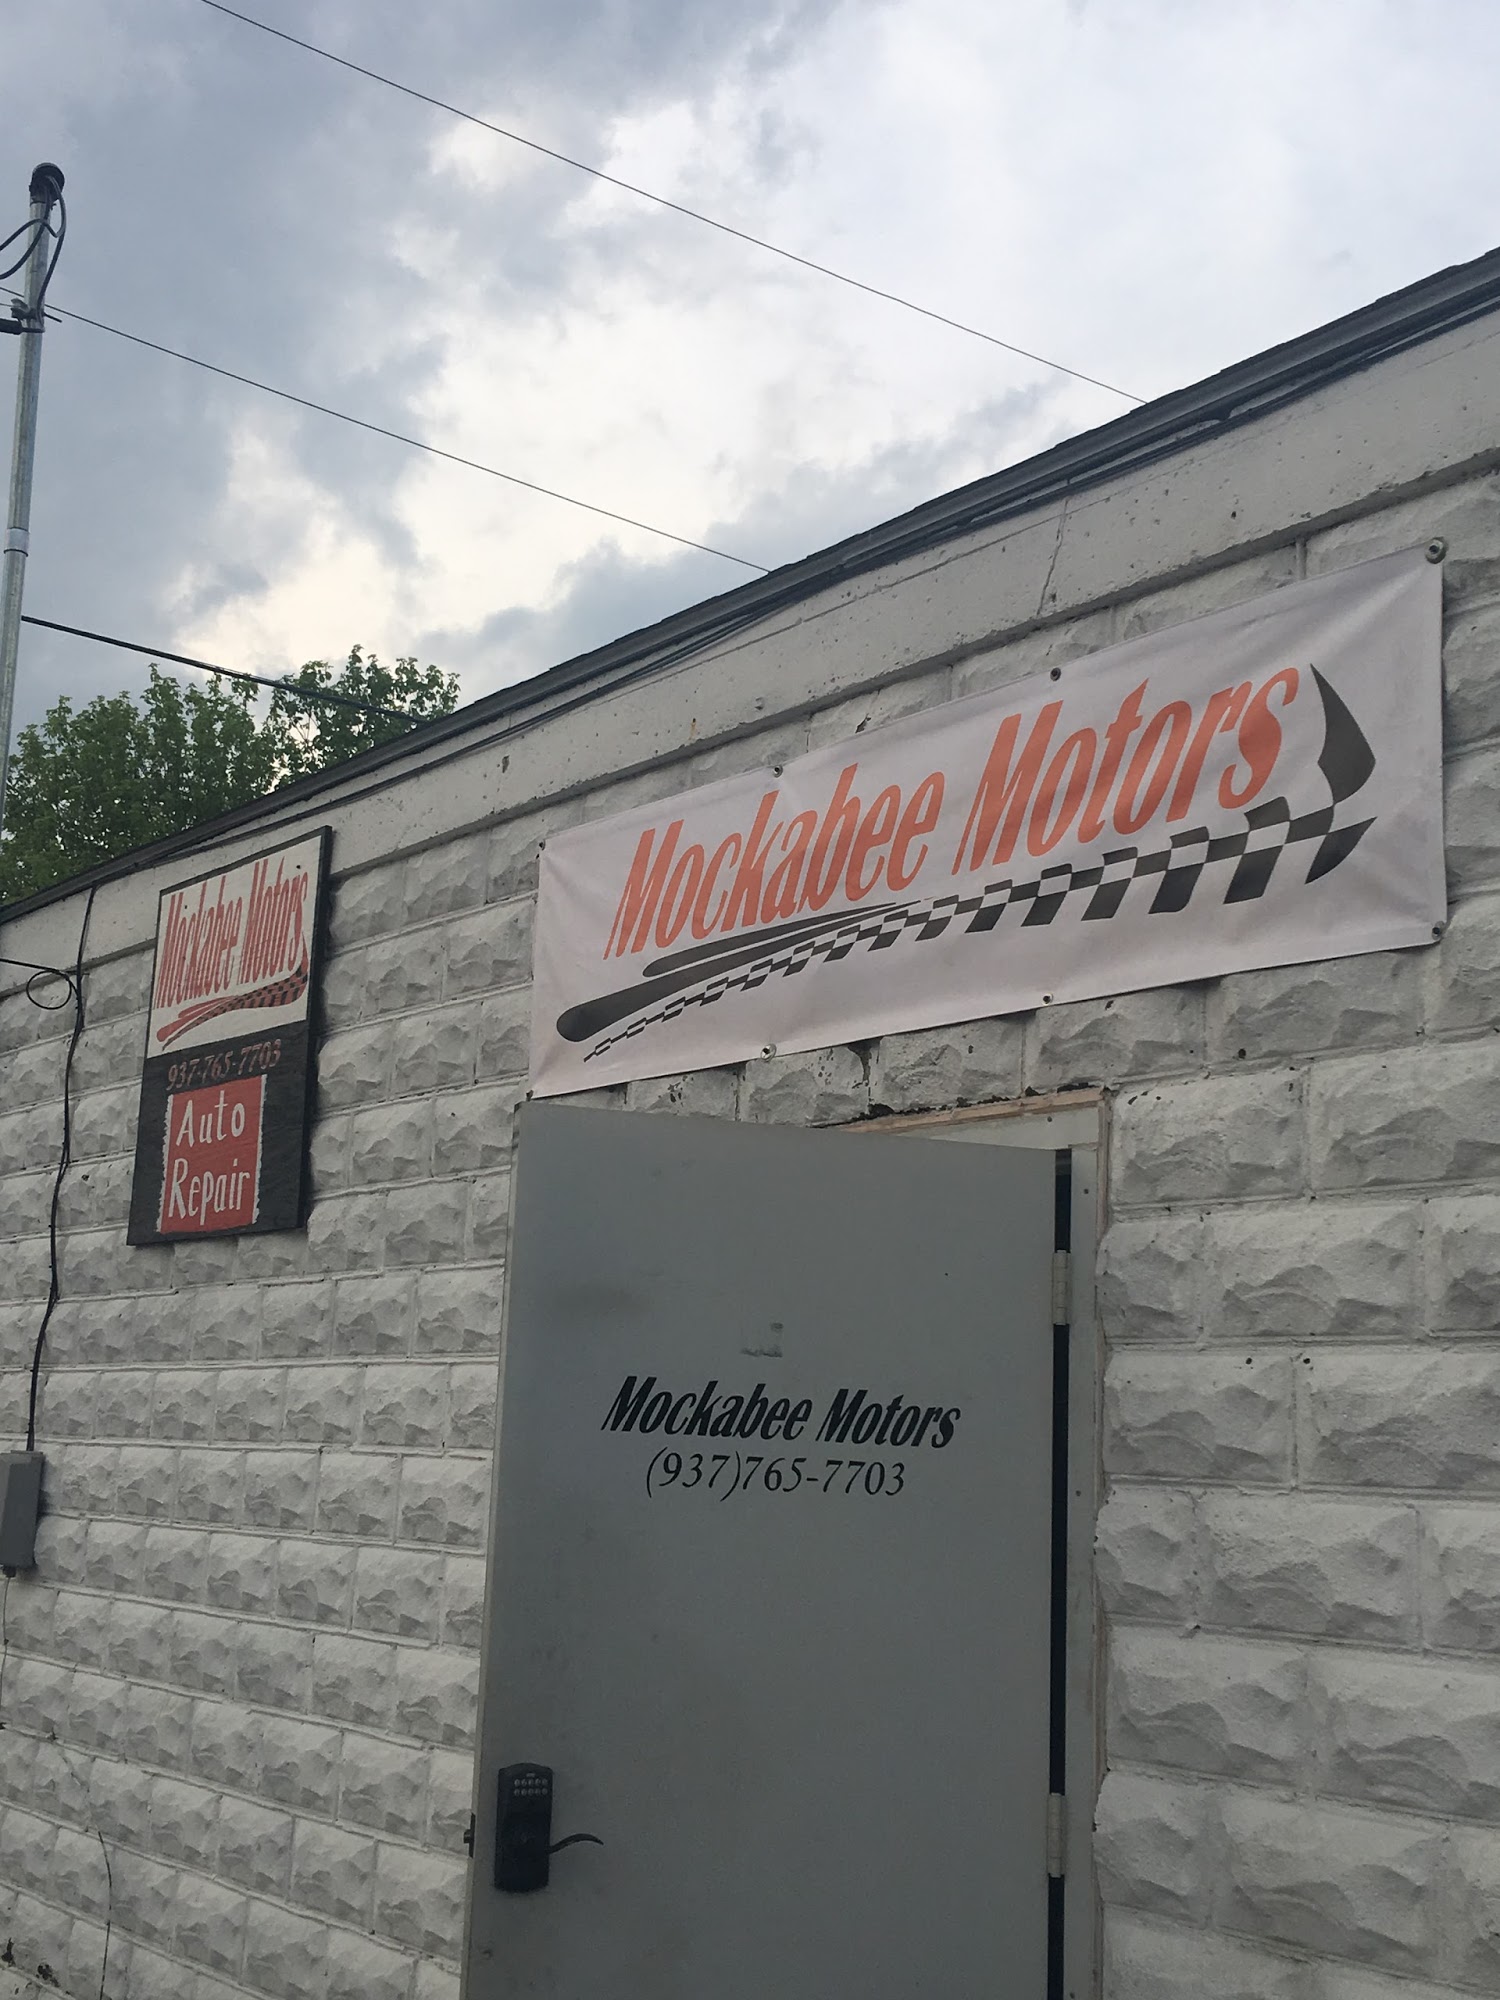 Mockabee Motors